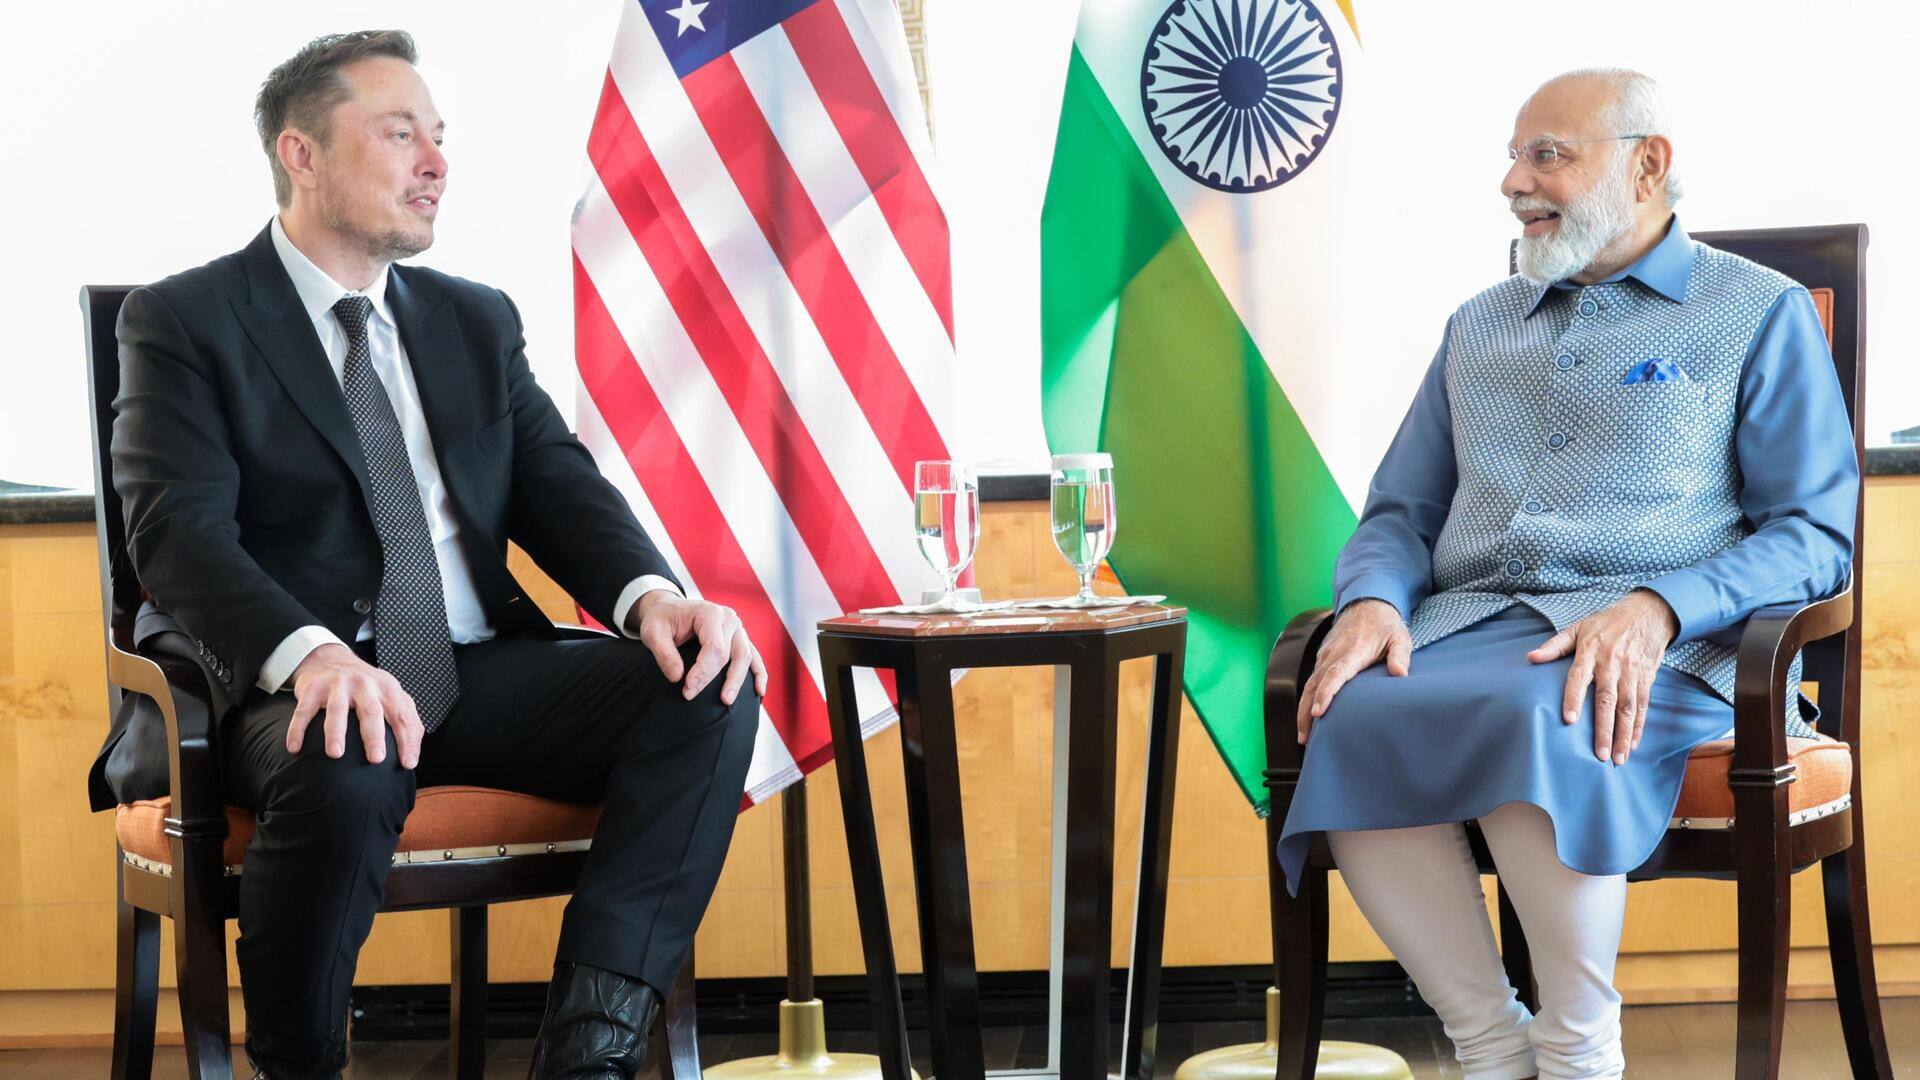 प्रधानमंत्री नरेंद्र मोदी से मिले एलन मस्क, टेस्ला और स्टारलिंक का रास्ता हो सकता है साफ